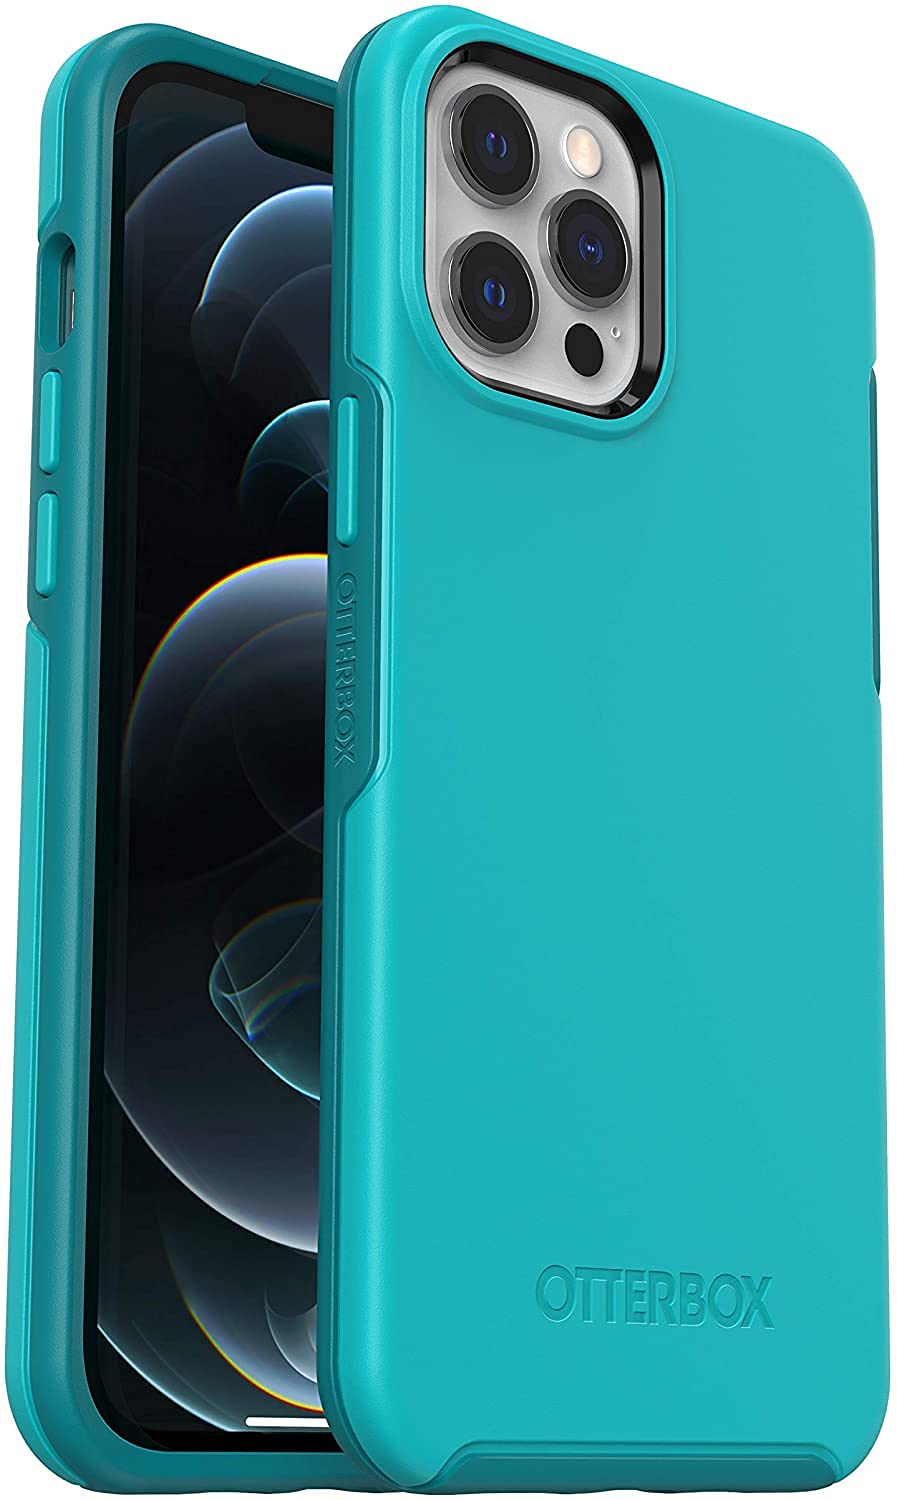 OtterBox Symmetry Hülle für iPhone 12 Pro Max, sturzsicher, schützende dünne Hülle, 3x getestet nach Militärstandard, antimikrobieller Schutz, Blau